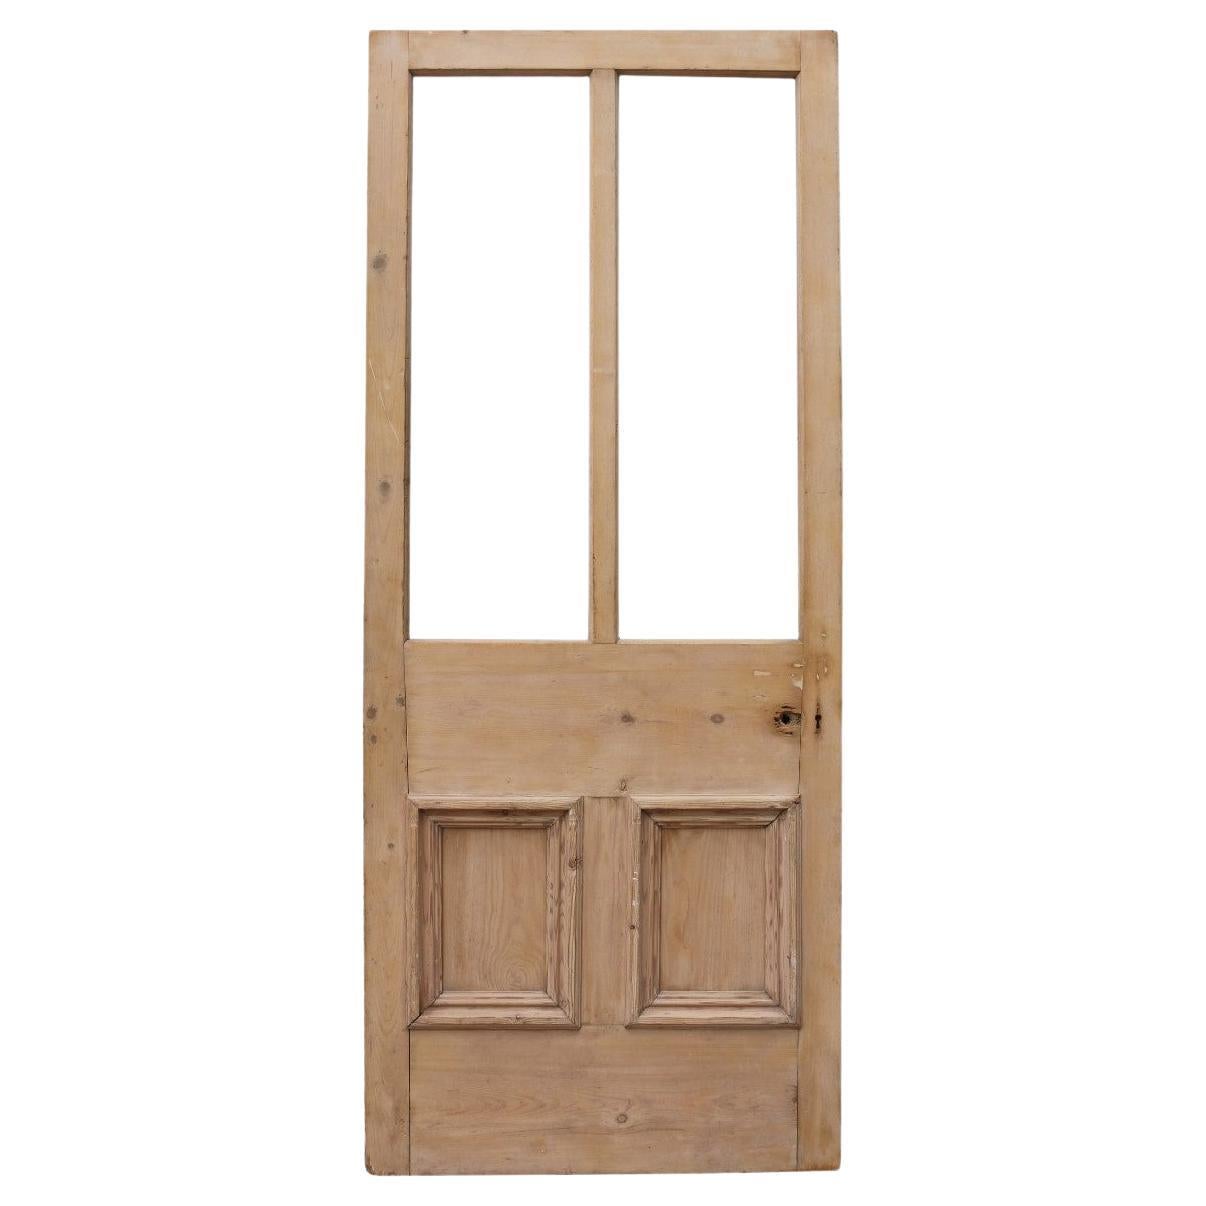 Antique Half Glazed Exterior Door For Sale